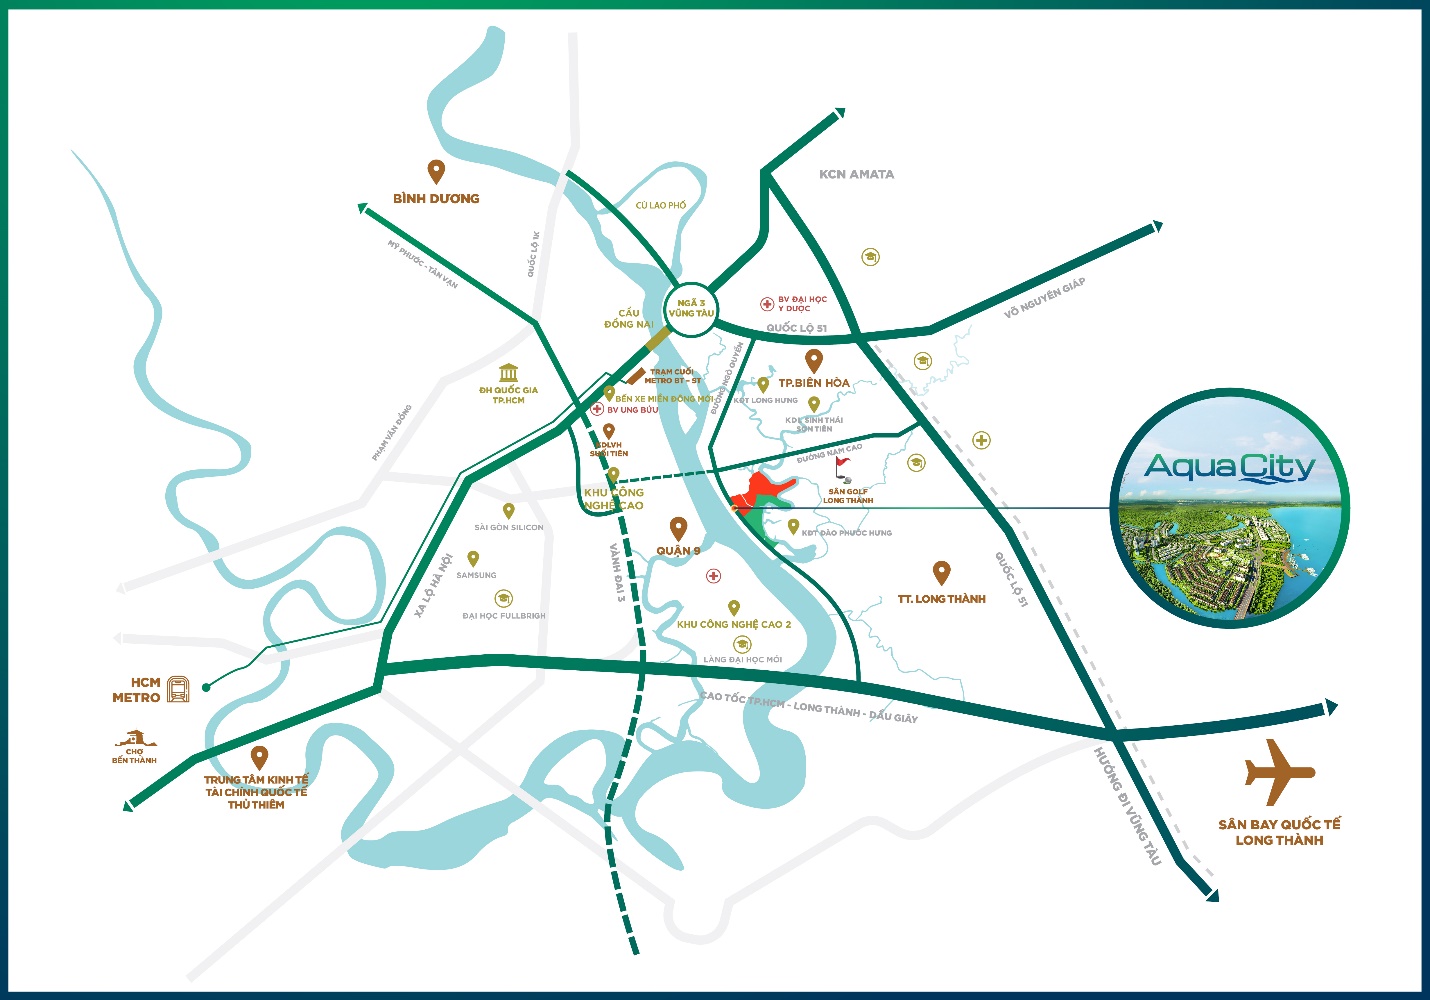 Aqua City nằm ở tâm điểm kết nối giao thông, dễ dàng kết nối đến TP.HCM và các khu vực lân cận TP. Biên Hòa, Bình Dương, Vũng Tàu, Phan Thiết